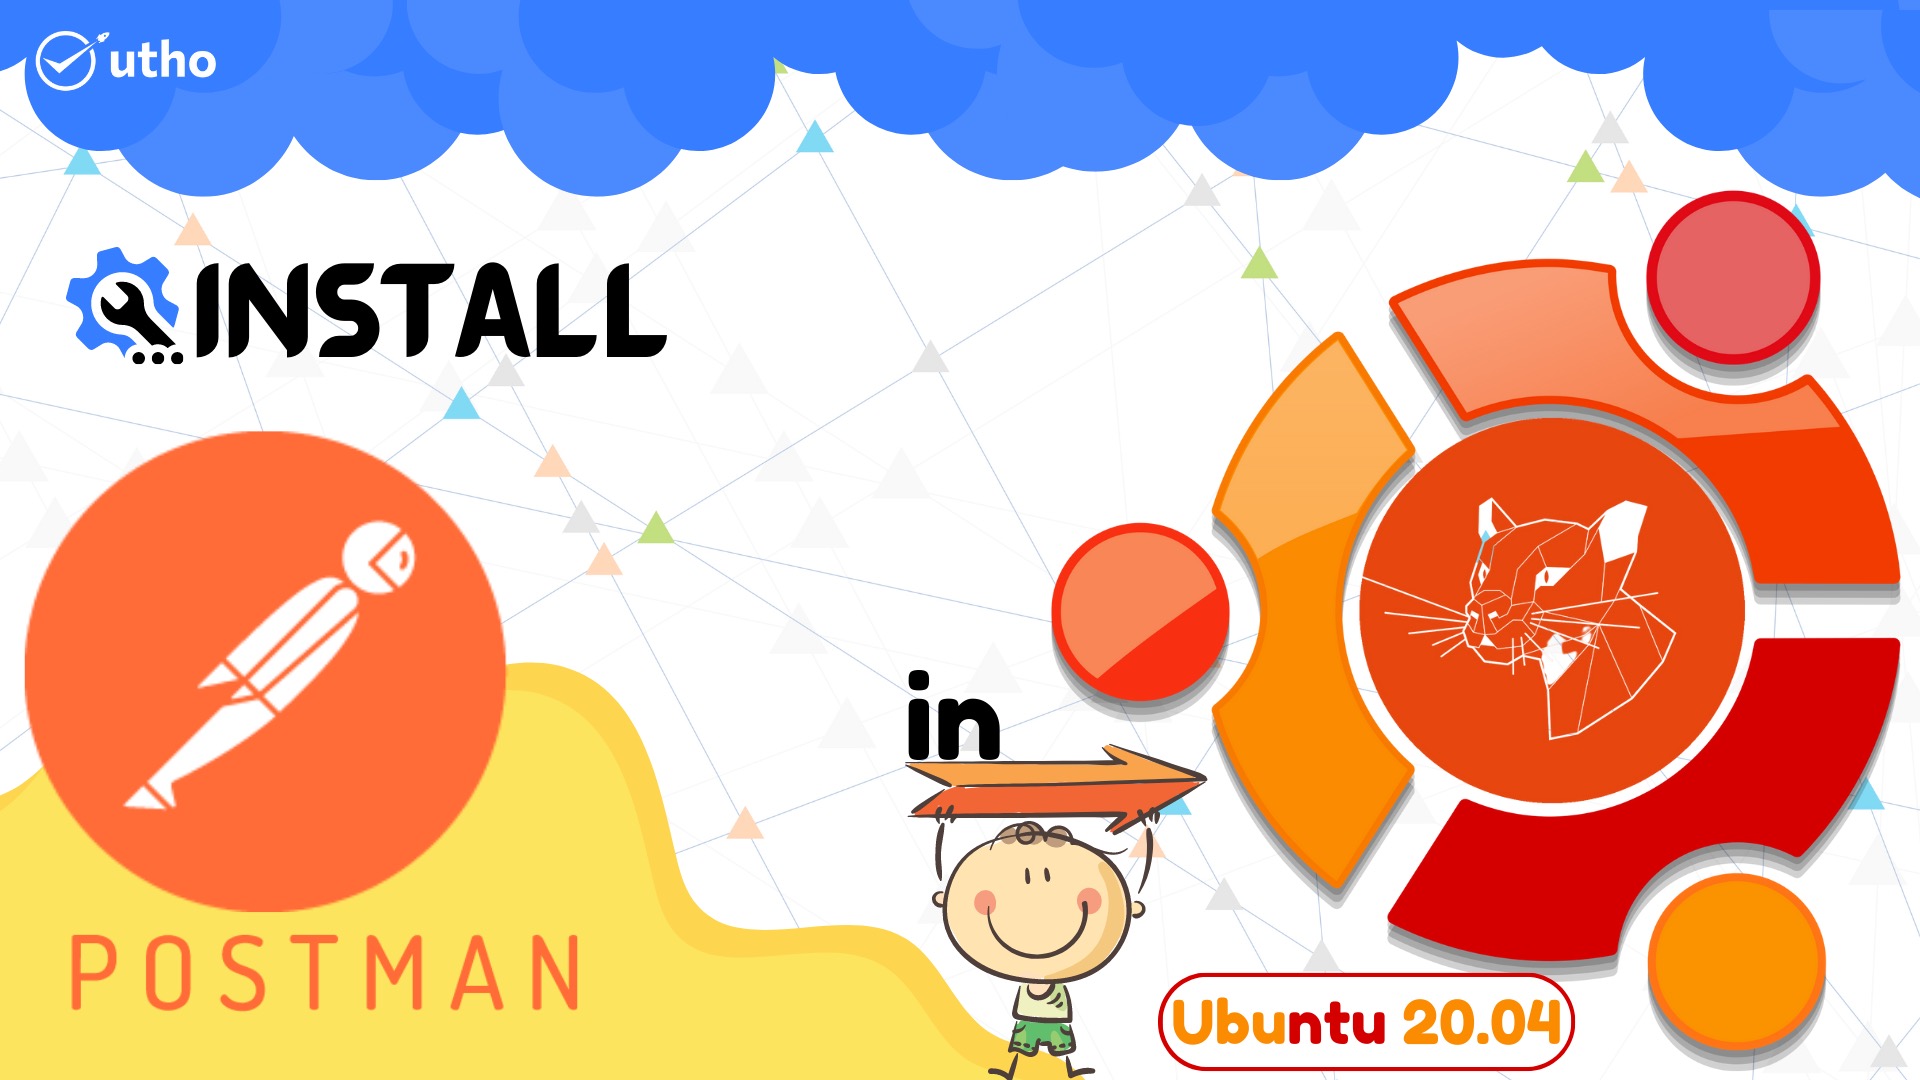 How to install Postman on Ubuntu 20.04